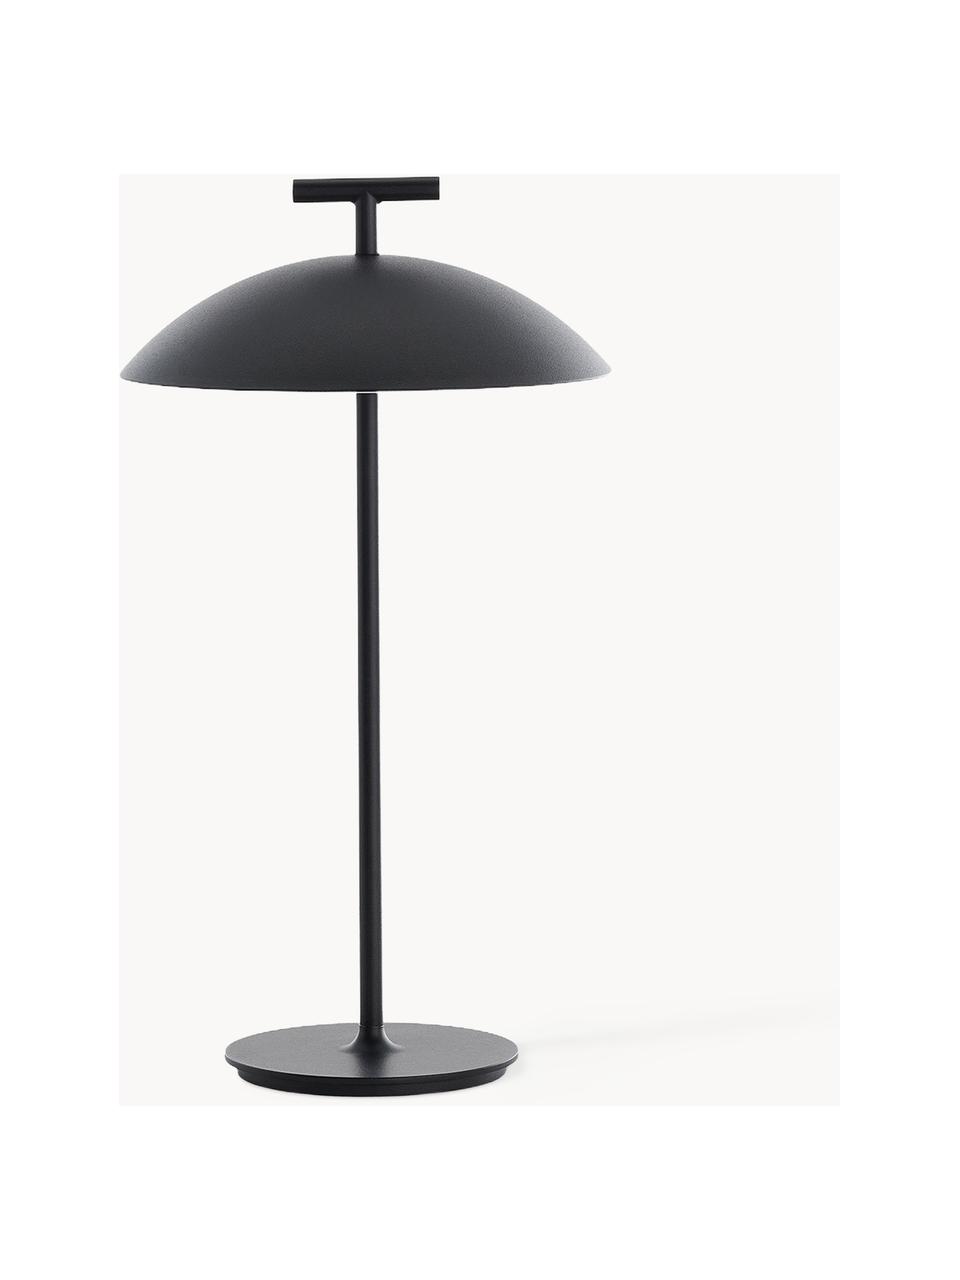 Lámpara de mesa LED regulable Mini Geen-A, portátil, Poliéster con pintura en polvo, Negro, Ø 20 x Al 36 cm